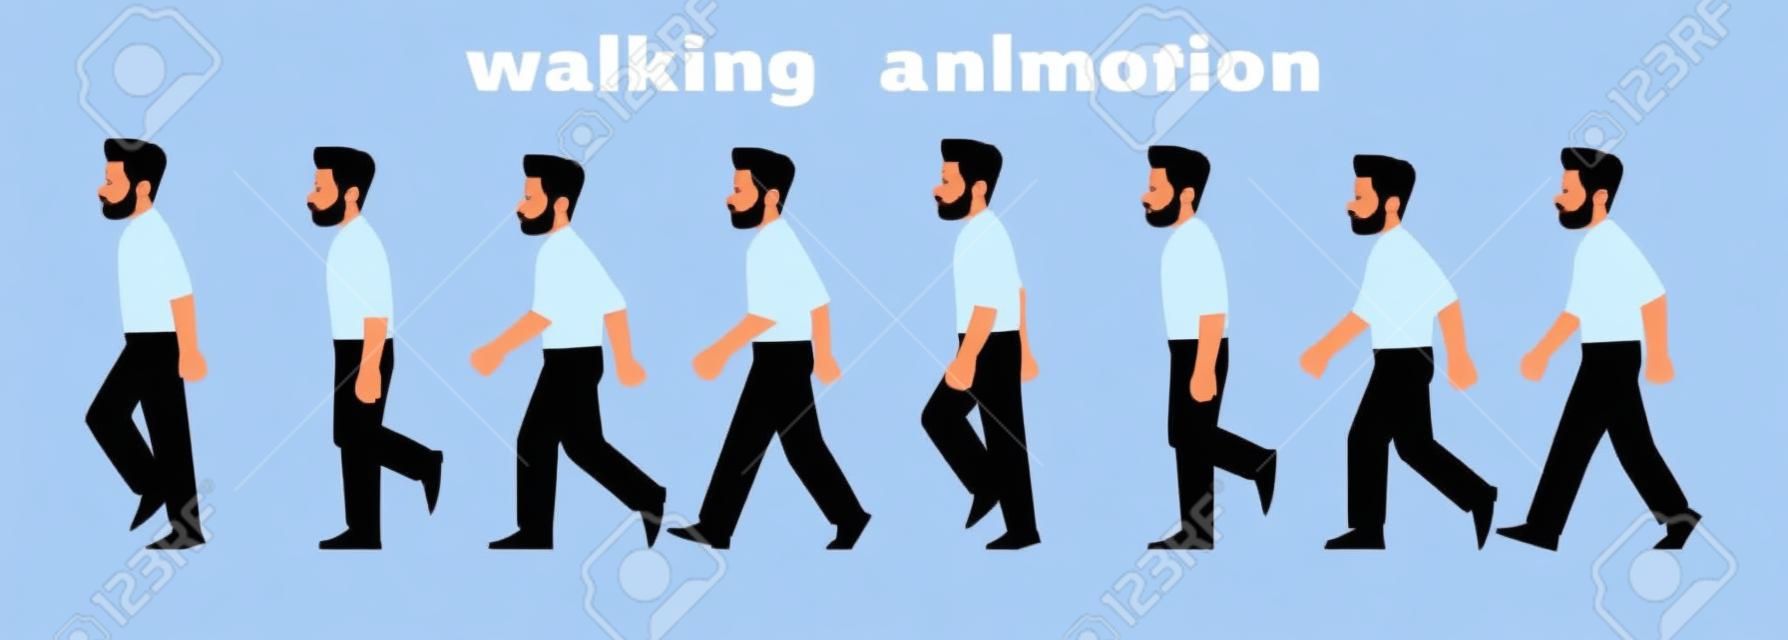 男性キャラクターの歩行アニメーション。ビジネスマンは、写真のステップバイステップのサイクルで歩きます。漫画スタイルのベクトル図